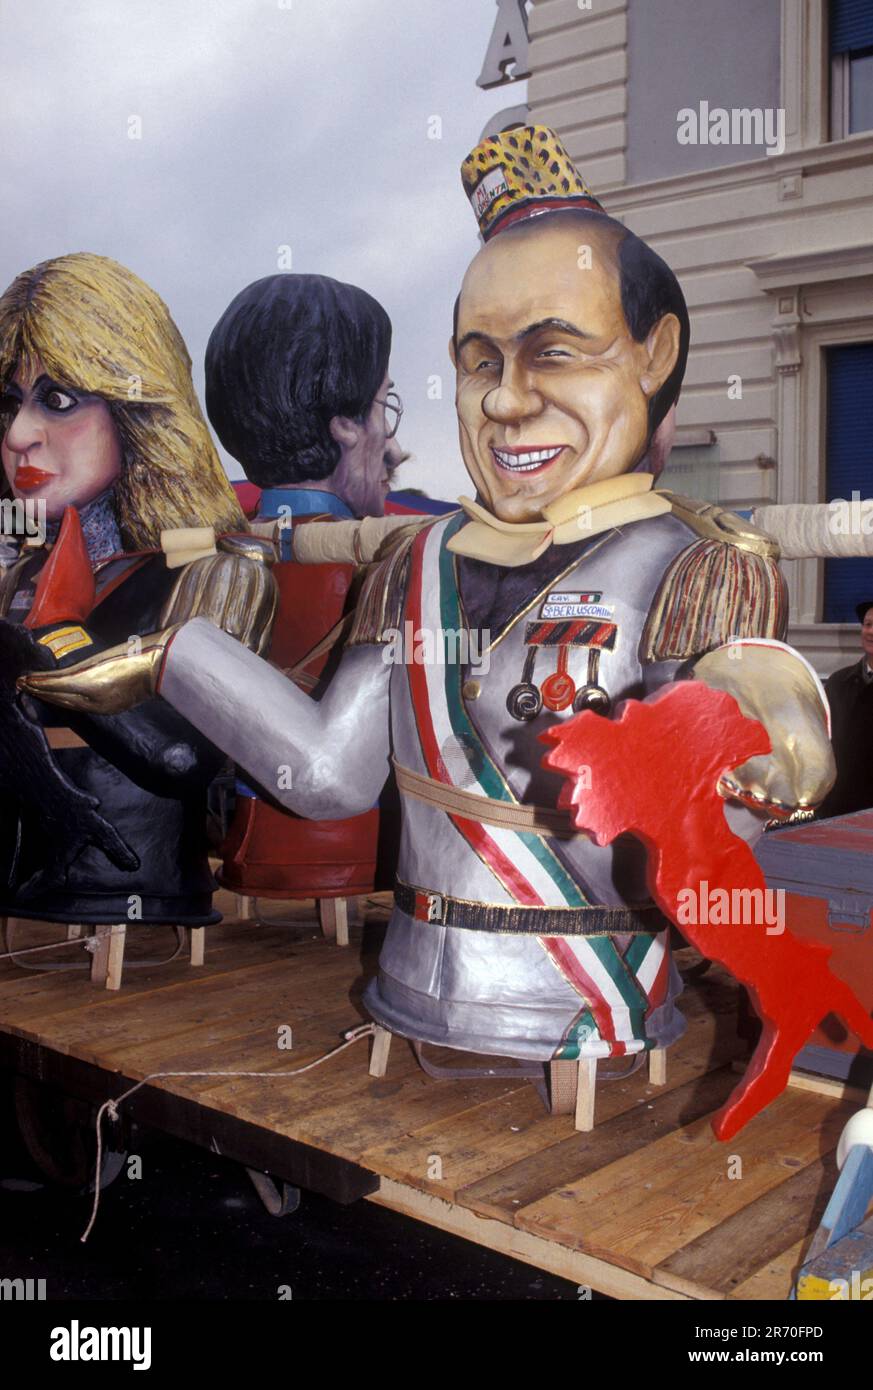 Milano - Silvio Berlusconi - archivio anni 90nella foto : Silvio ...